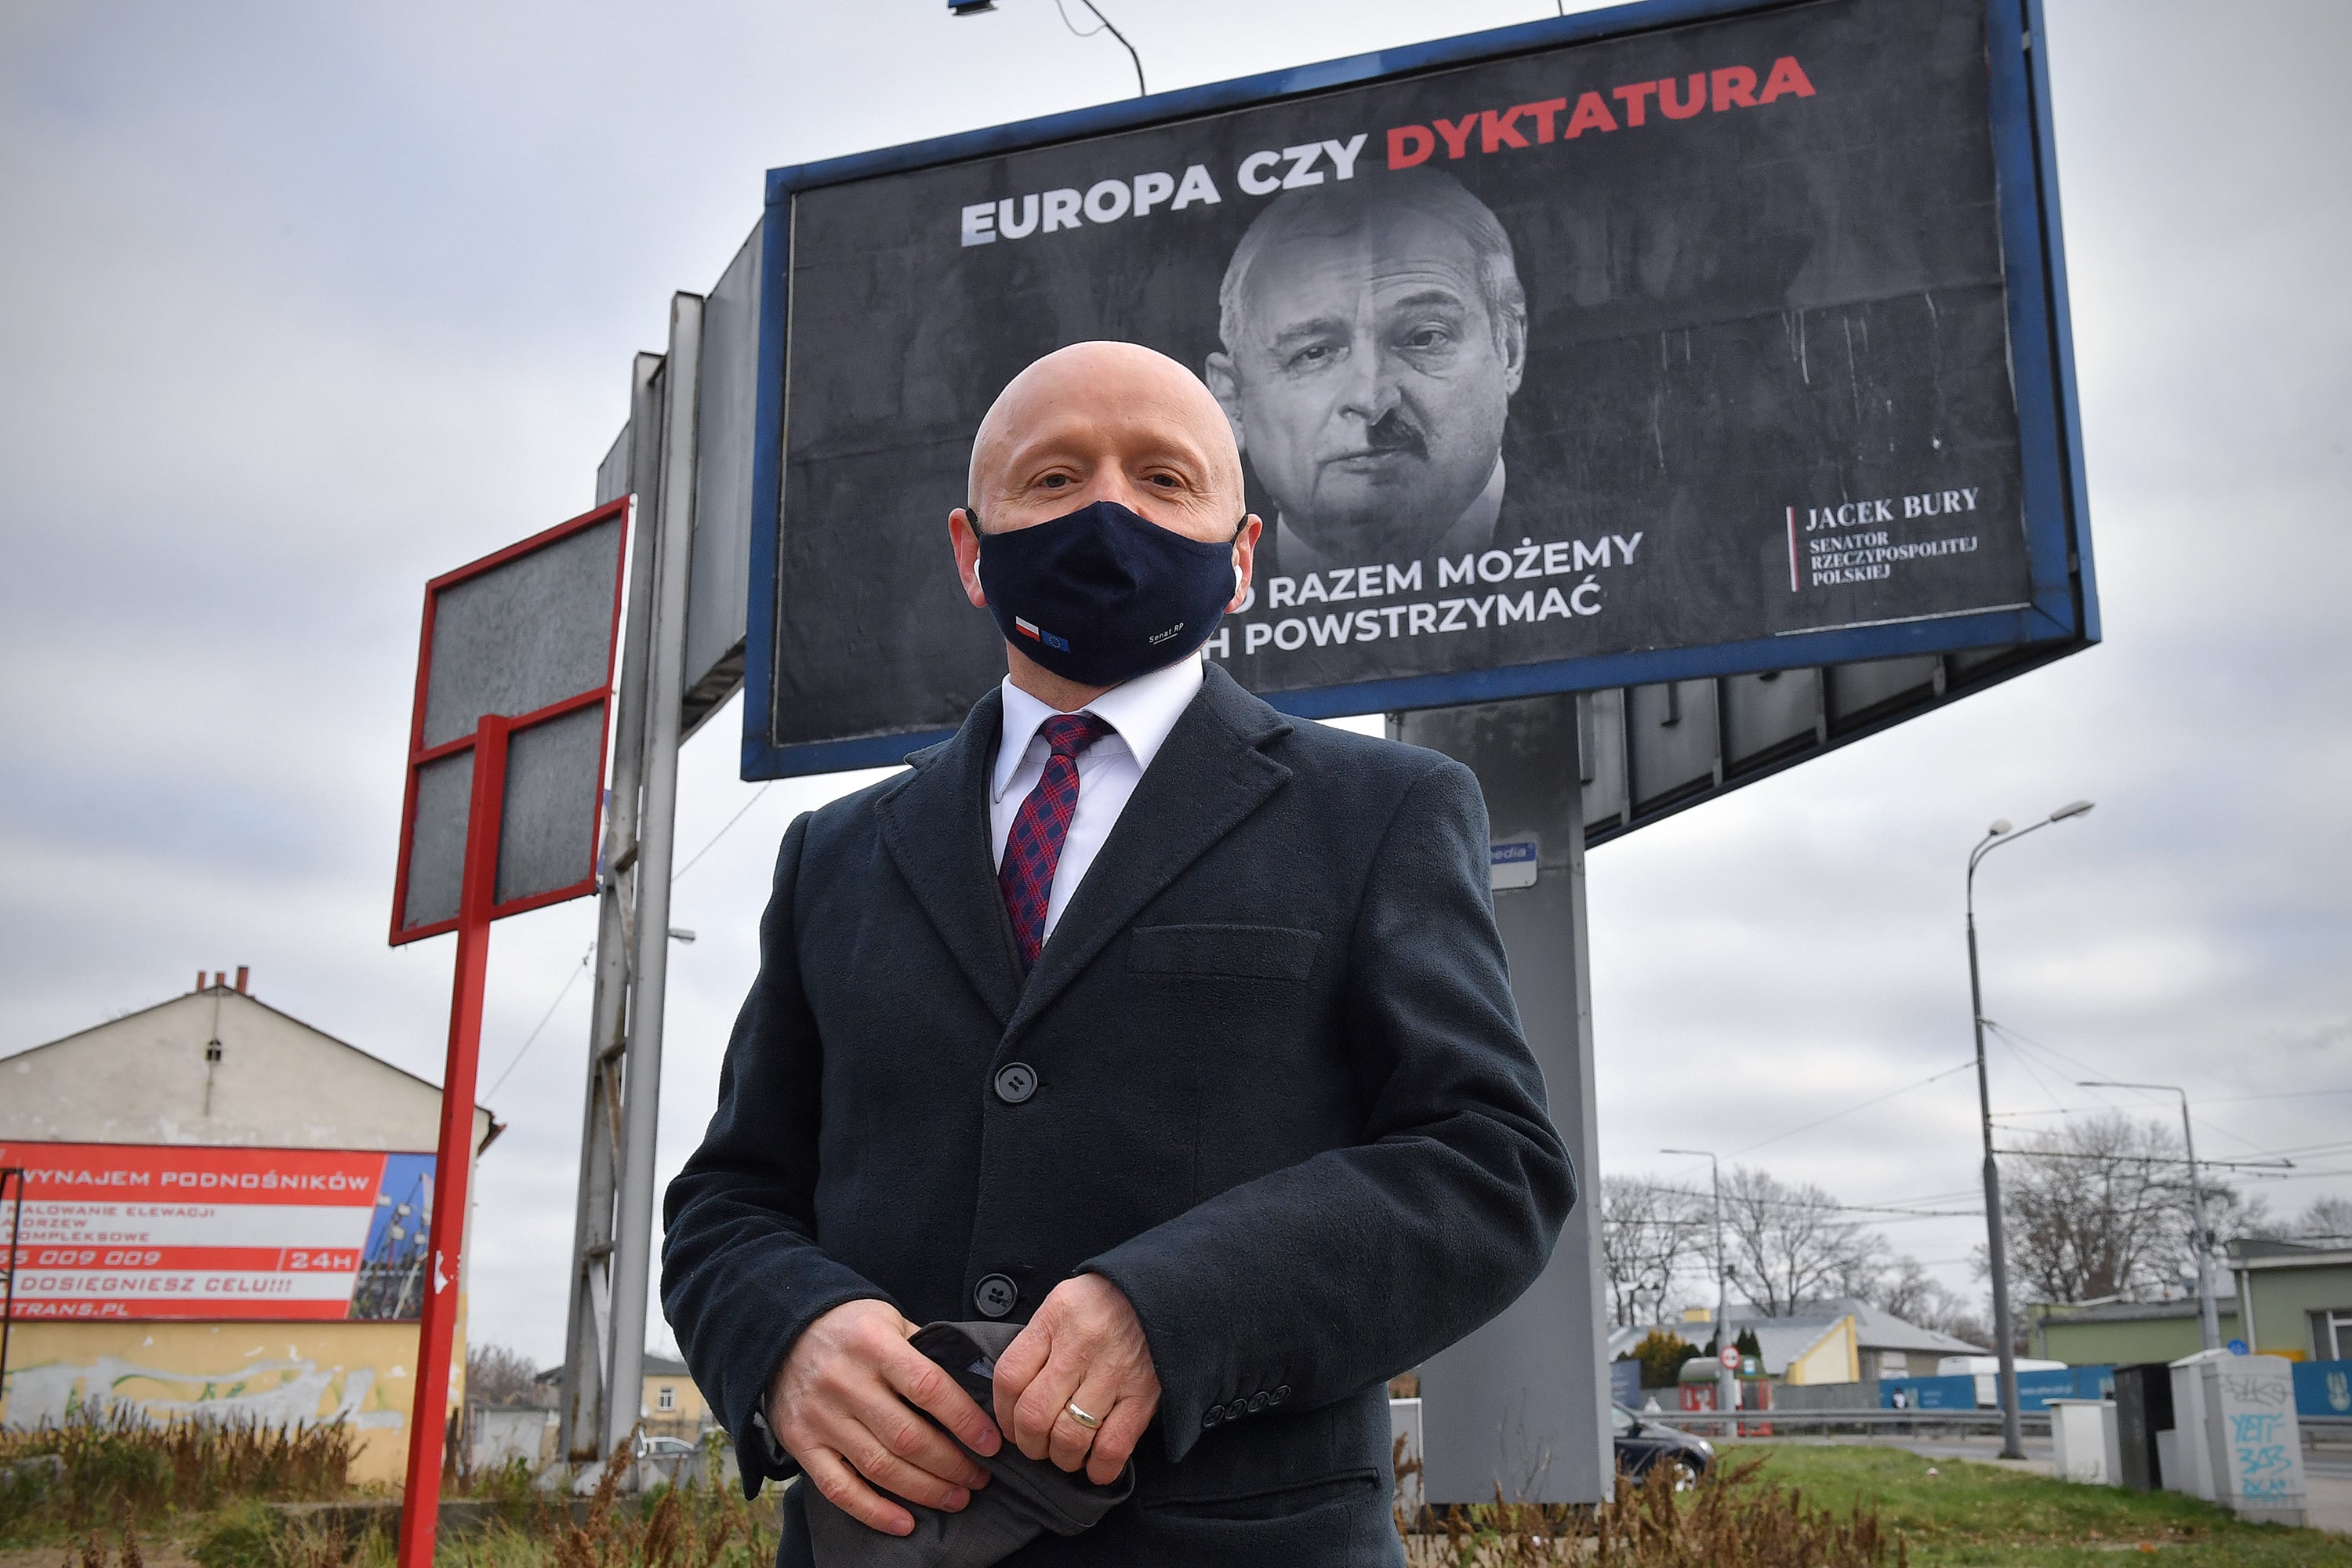 Billboardy z hasłem "Europa czy dyktatura?" w Lublinie. Senator Bury: Nie boję się władzy, która spycha mój kraj w kierunku dyktatury - Zdjęcie główne